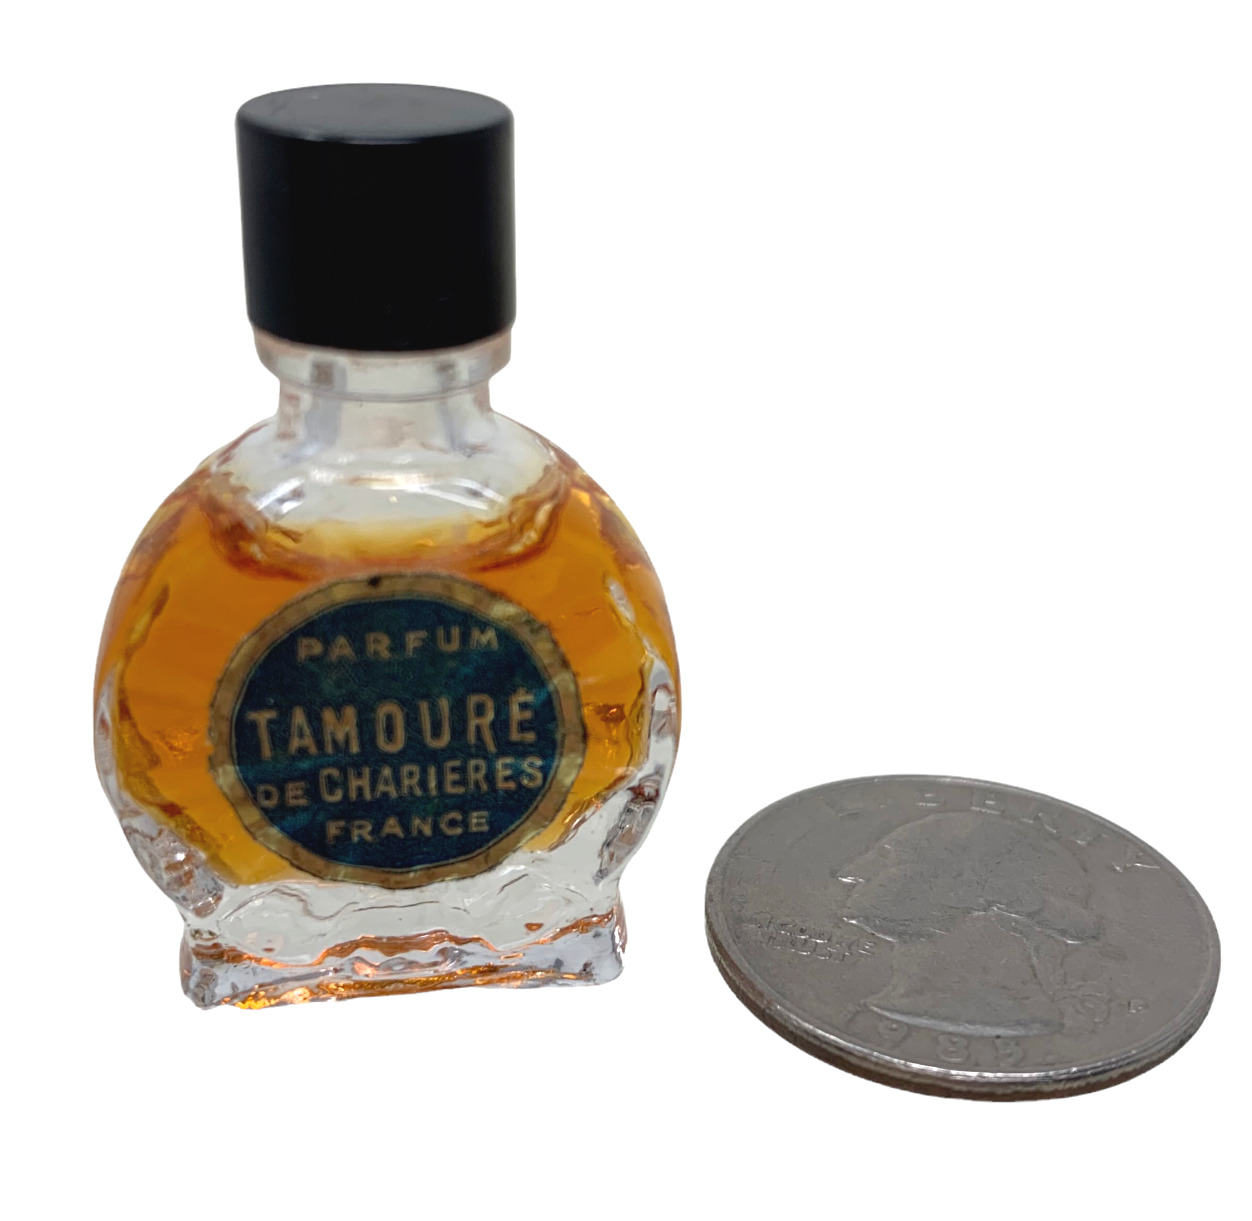 Vintage Tamoure De Charieres France Pure Parfum Micro Mini Splash Fragrance